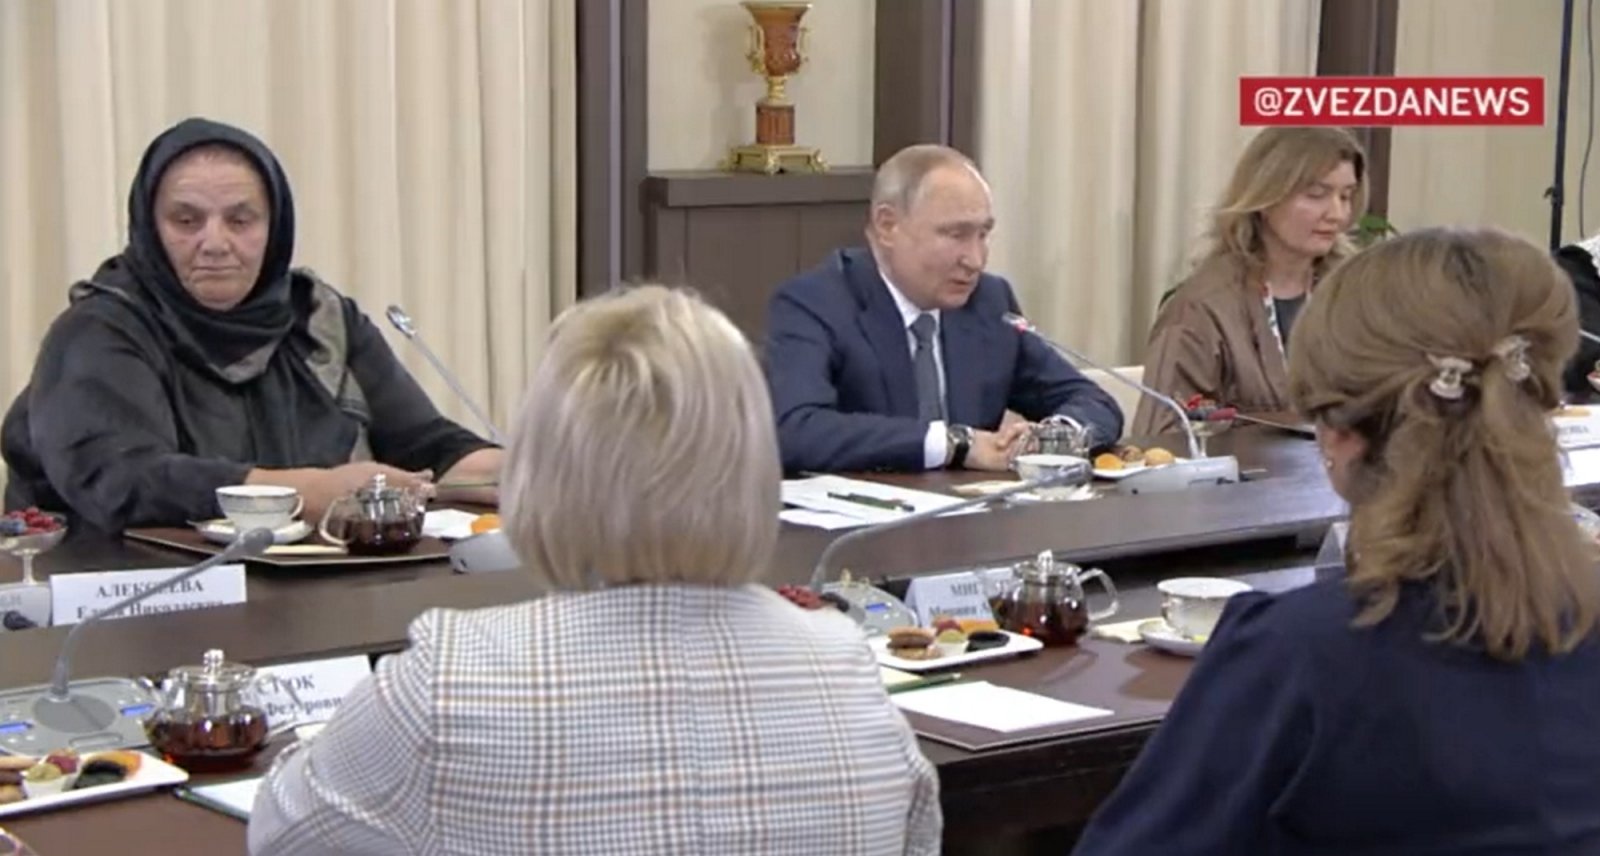 Putino susitikimo su karių motinomis transliacija nutraukta iškart po jo pasisakymo